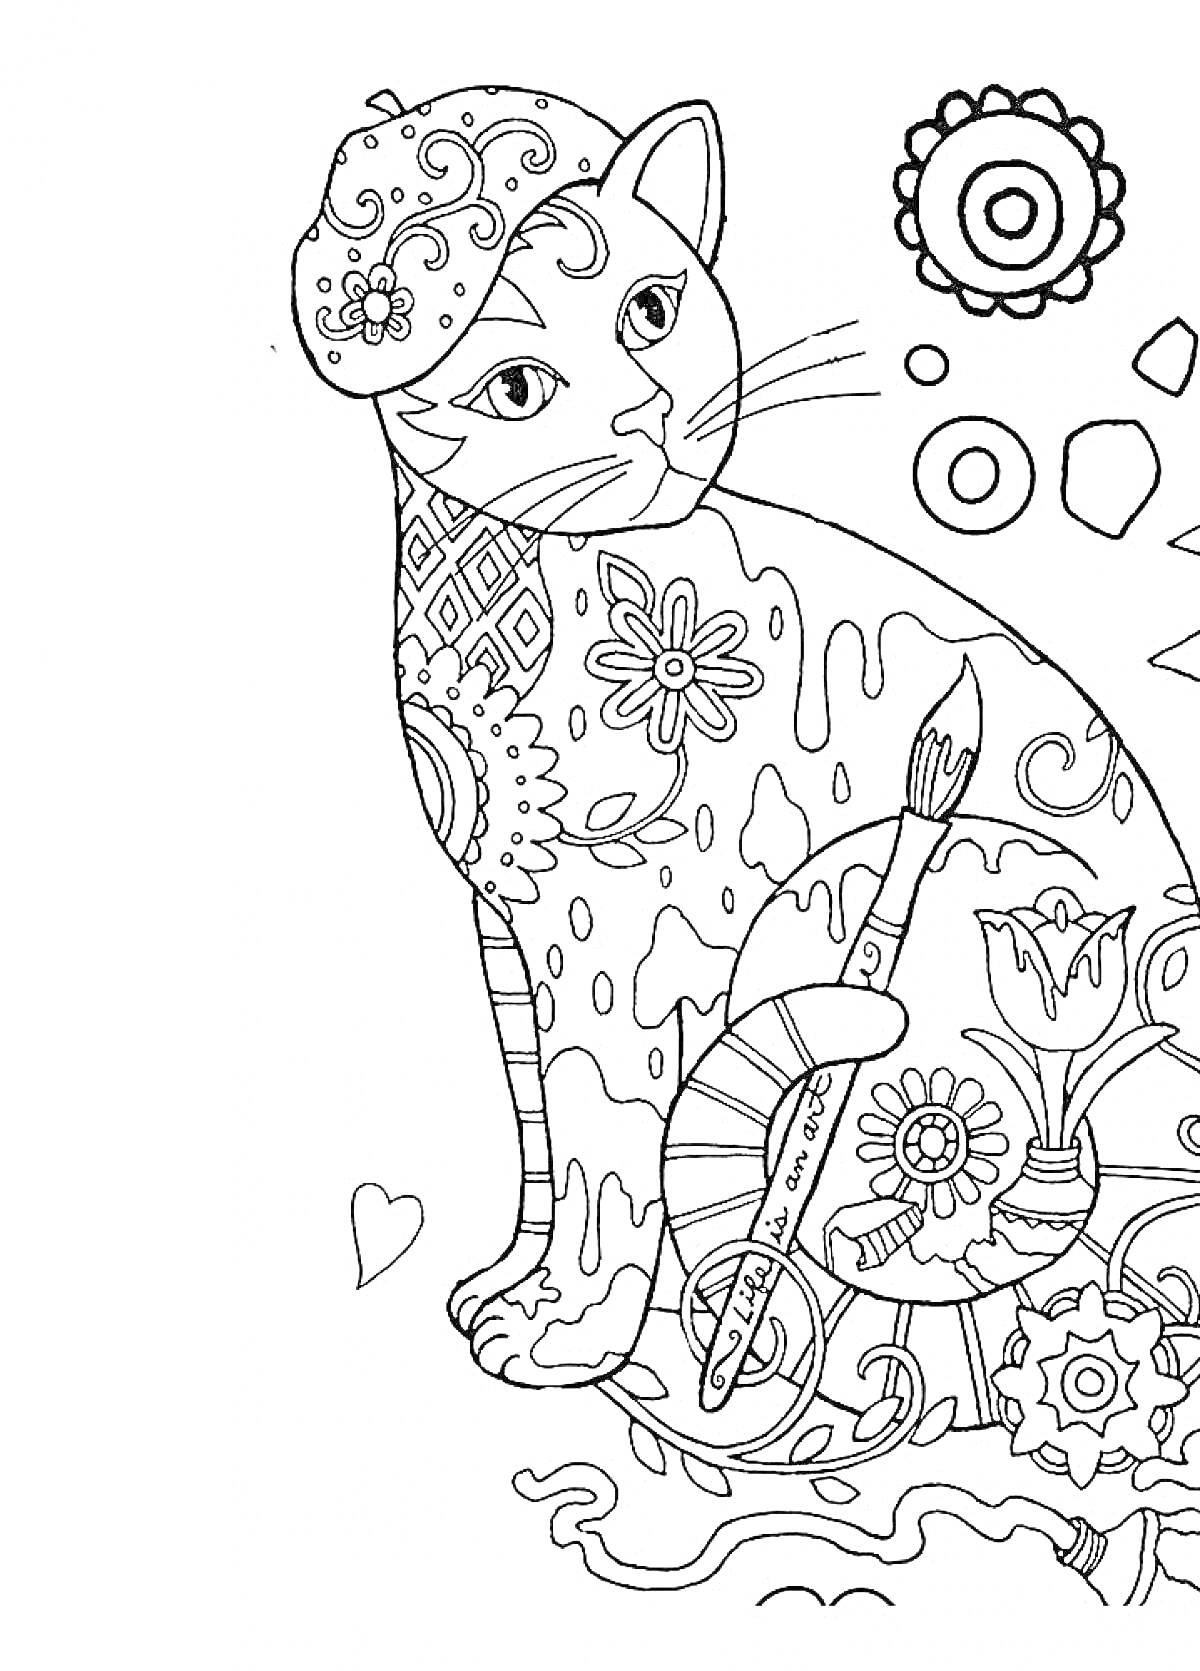 Кот с элементами раскраски, кисти, палитры, цветов, узоров и геометрических фигур.